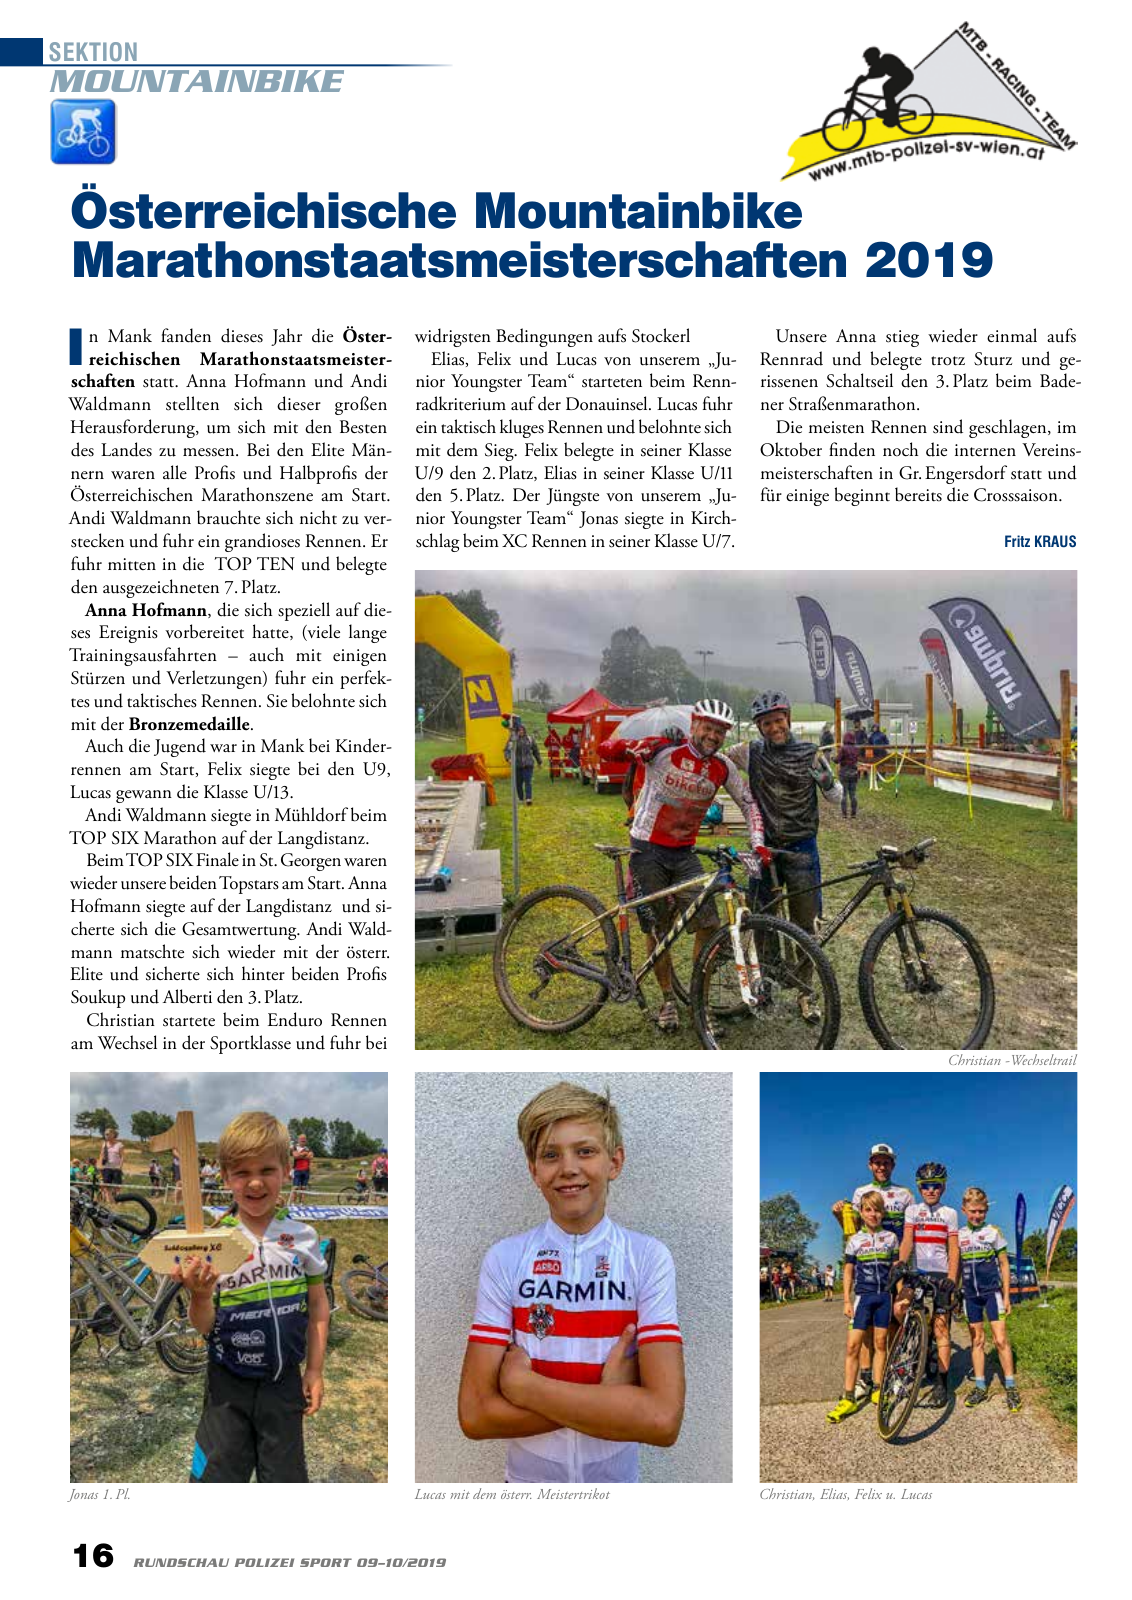 Vorschau Rundschau Polizei Sport 09-10/2019 Seite 16